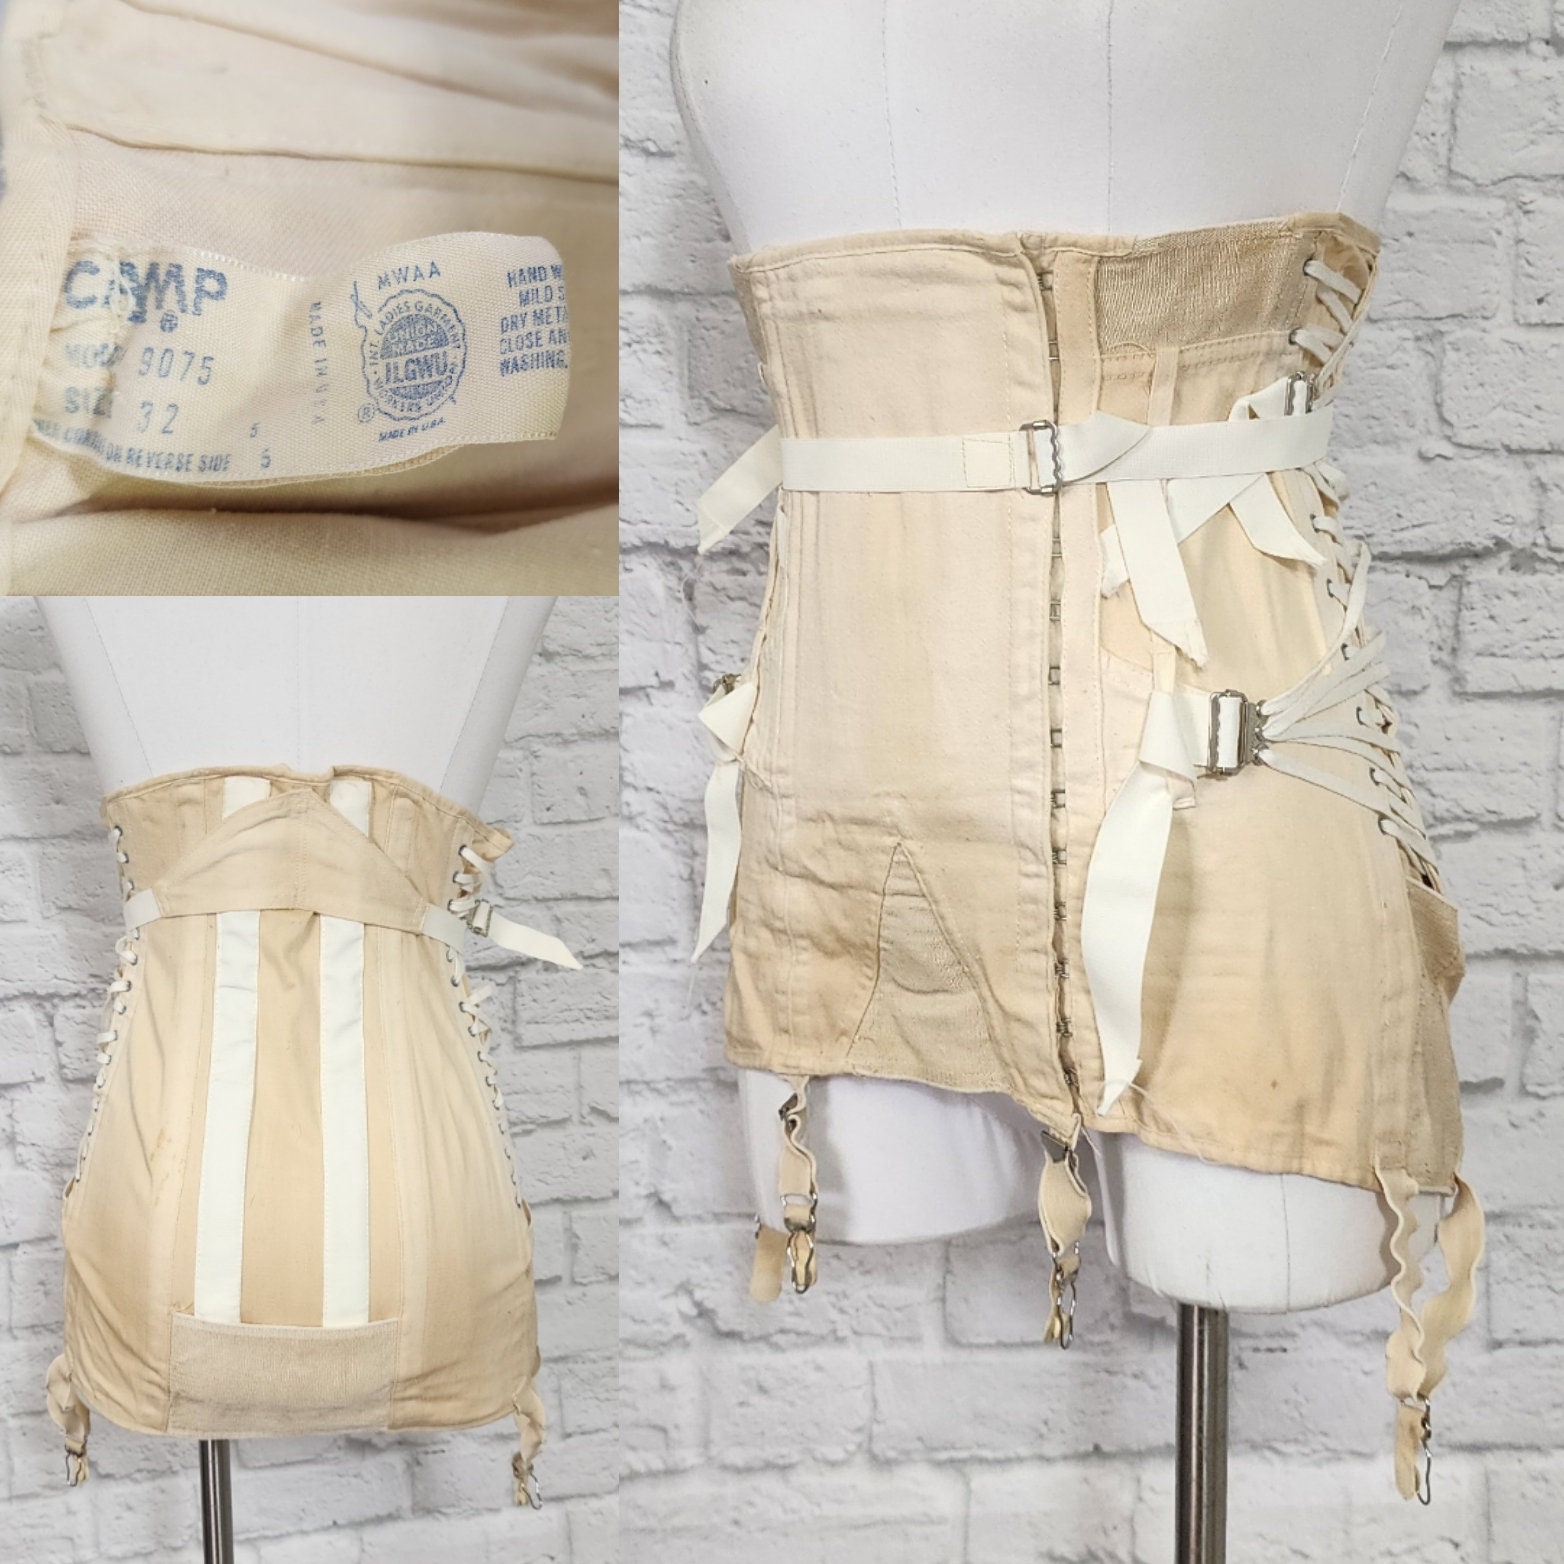 Vintage 1960s fan lace camp corset, garters, girdle, waist cincher